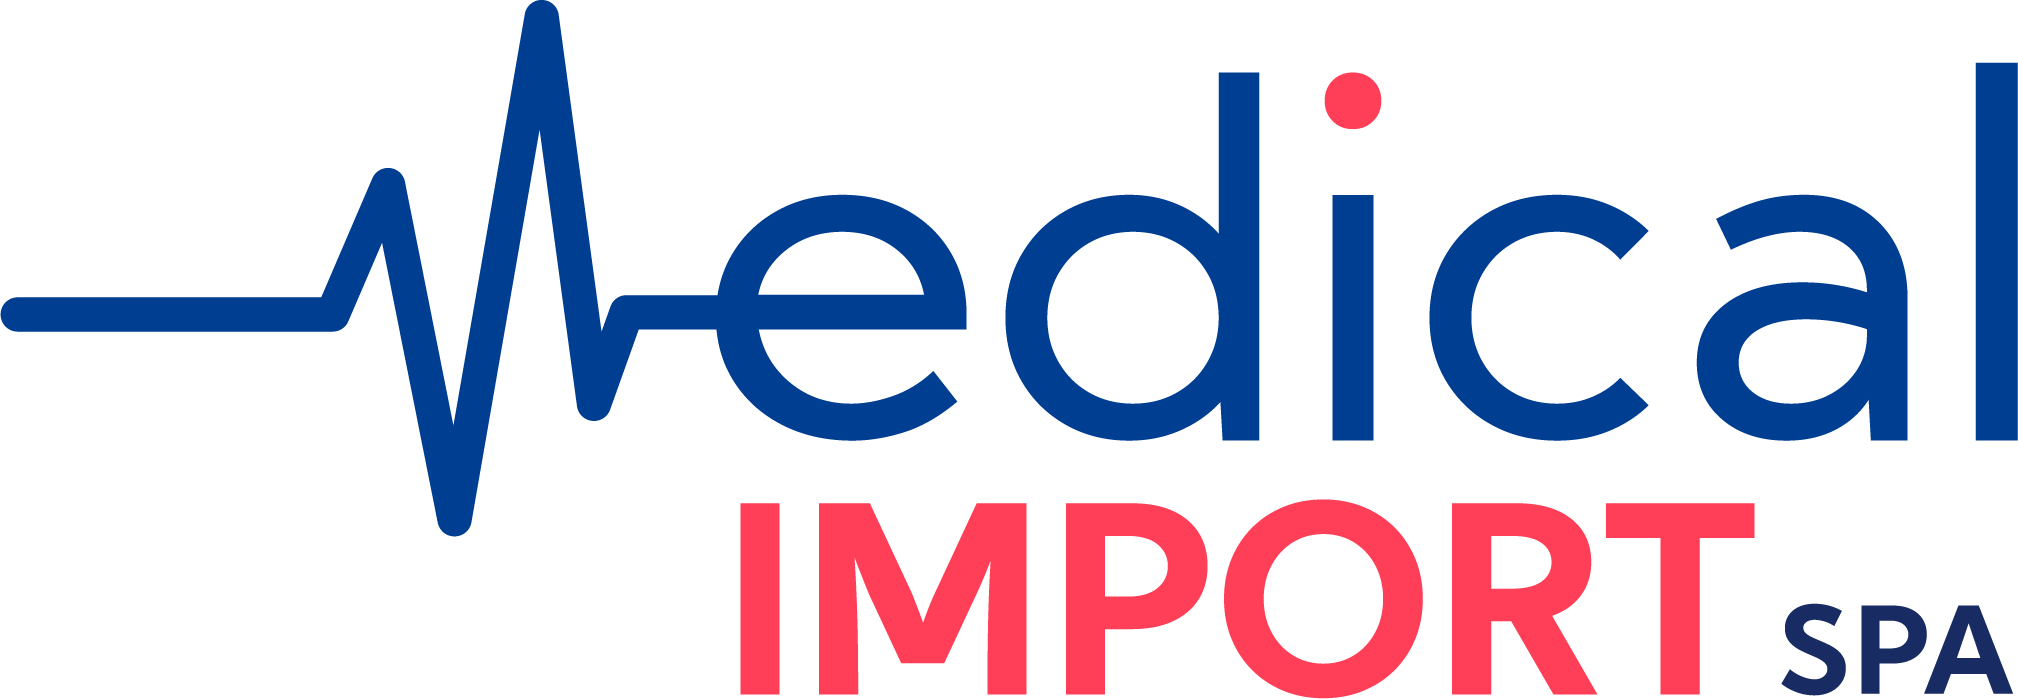 medical_importsa_logo